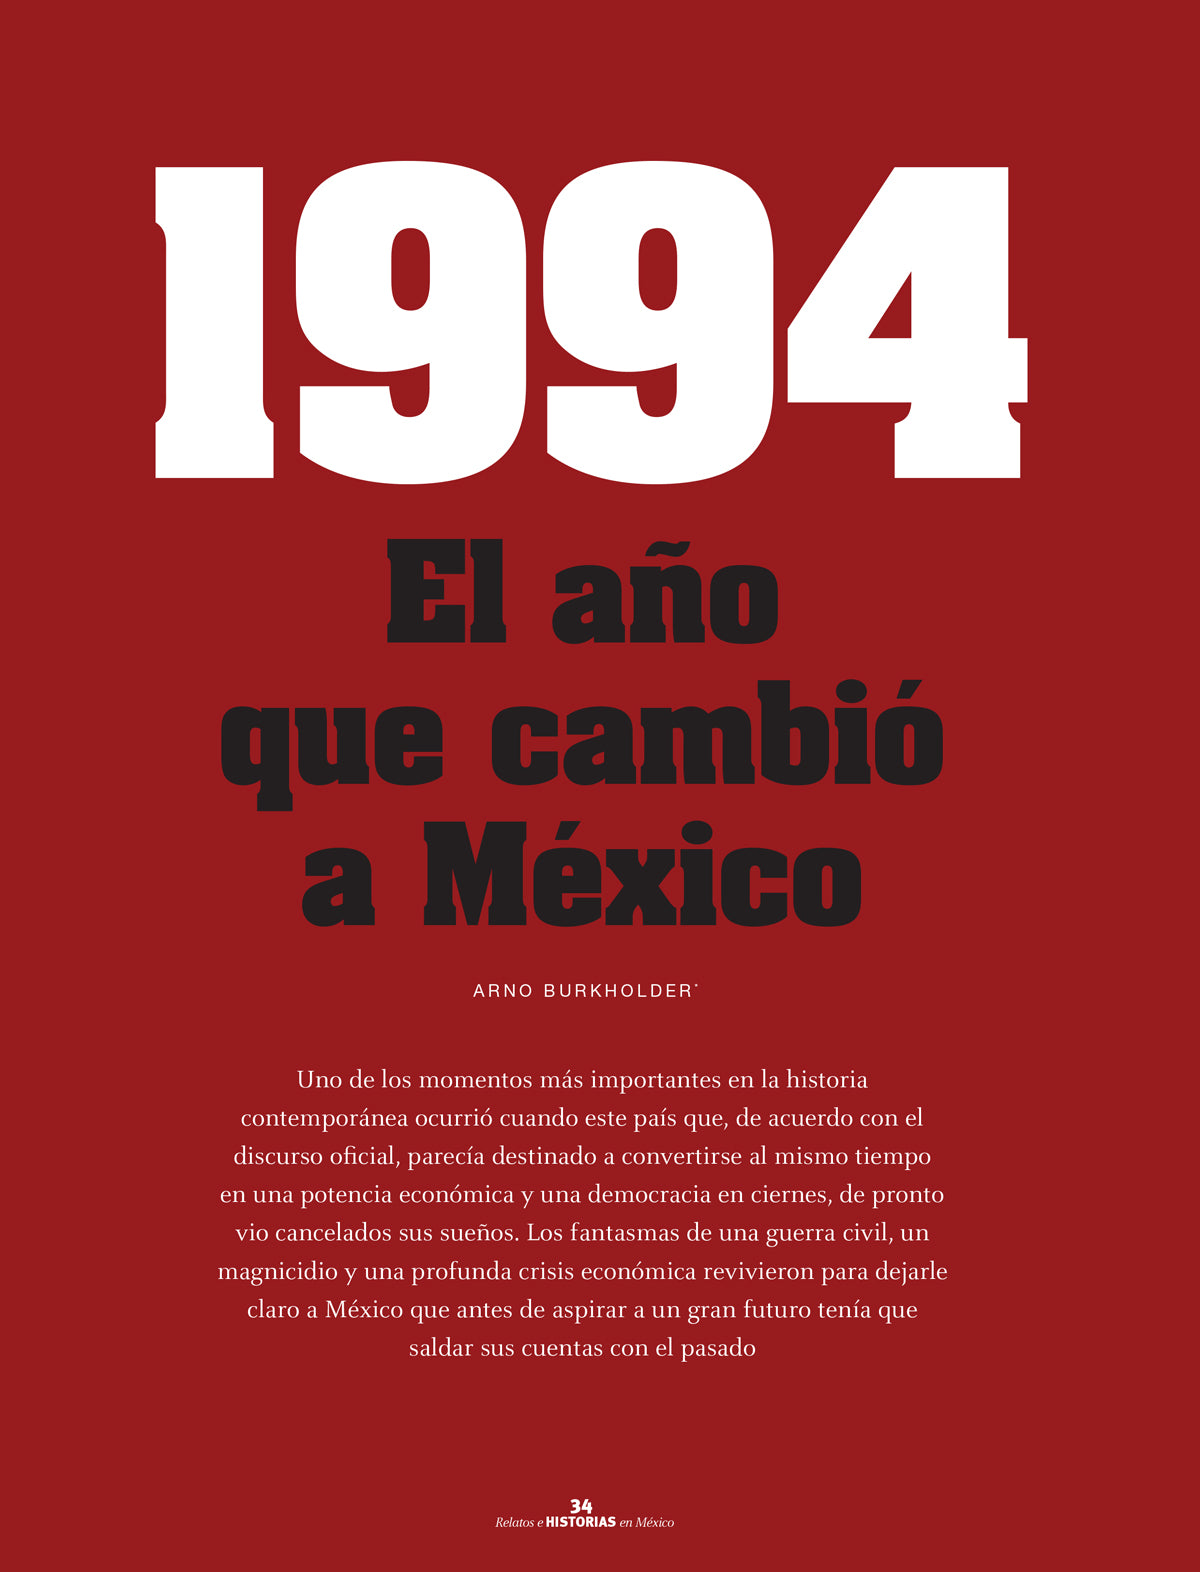 1994 El año que cambio a México